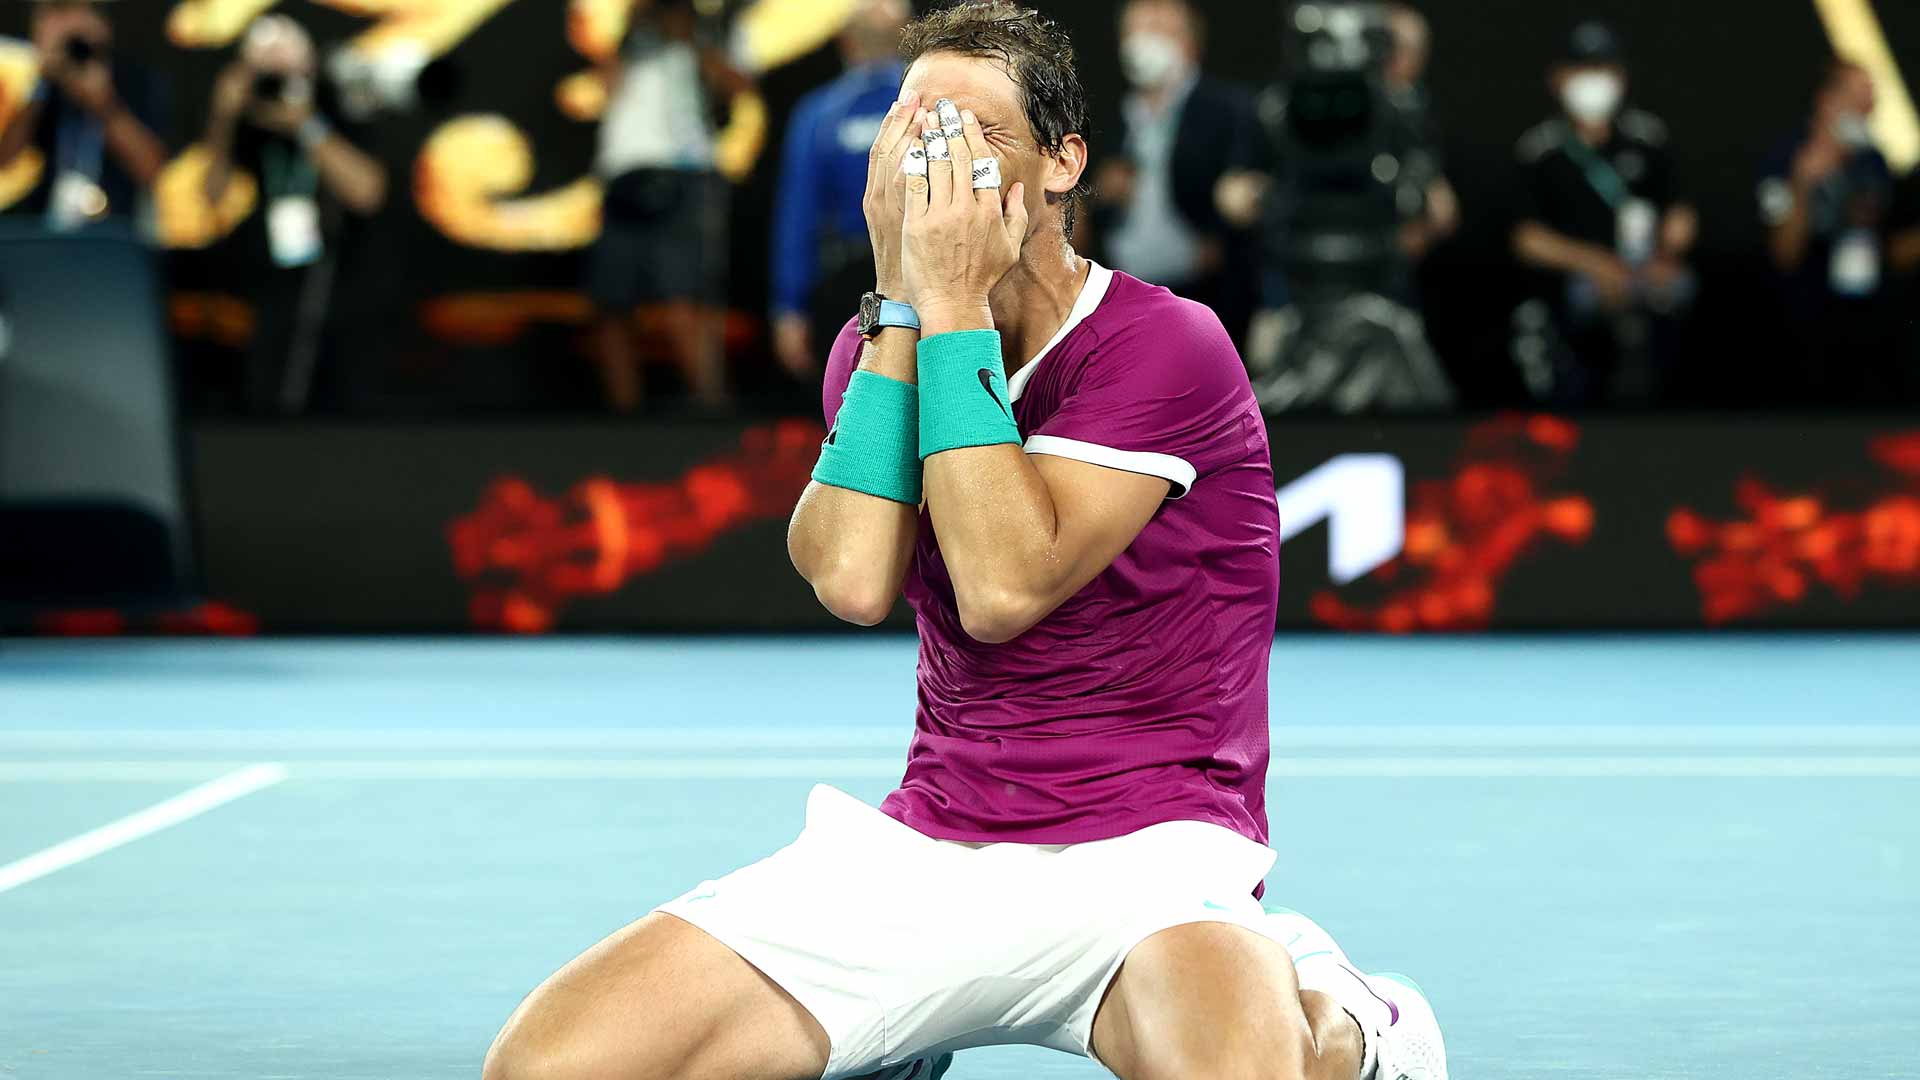 "Still not enough" Rafael Nadal